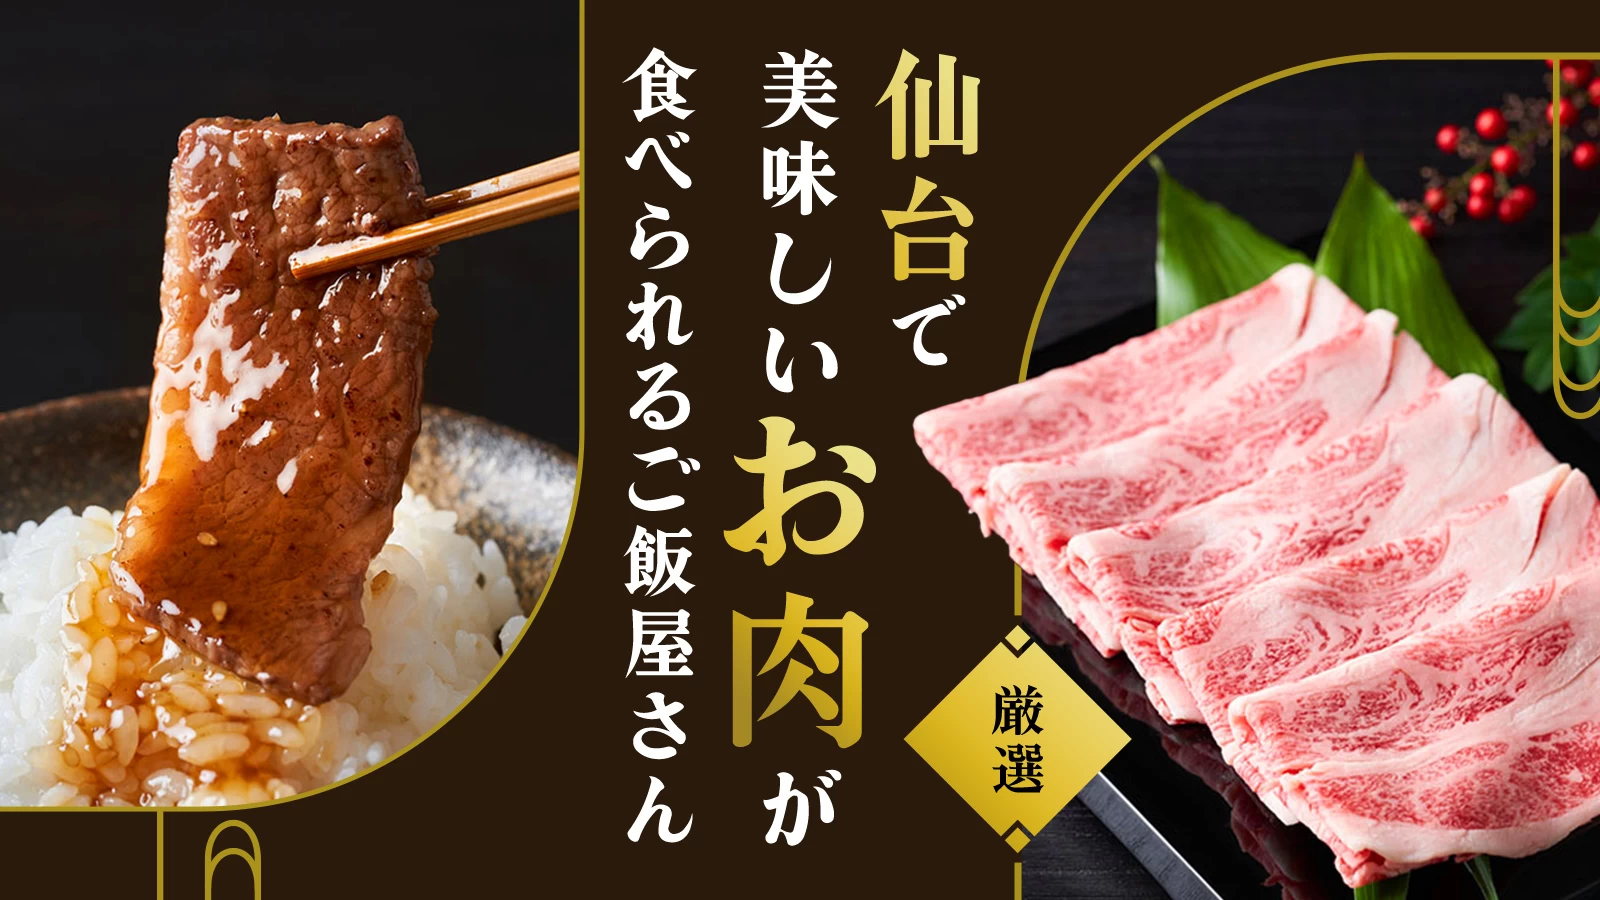 【厳選】仙台でランチから美味しいお肉が食べられるご飯屋さん5選